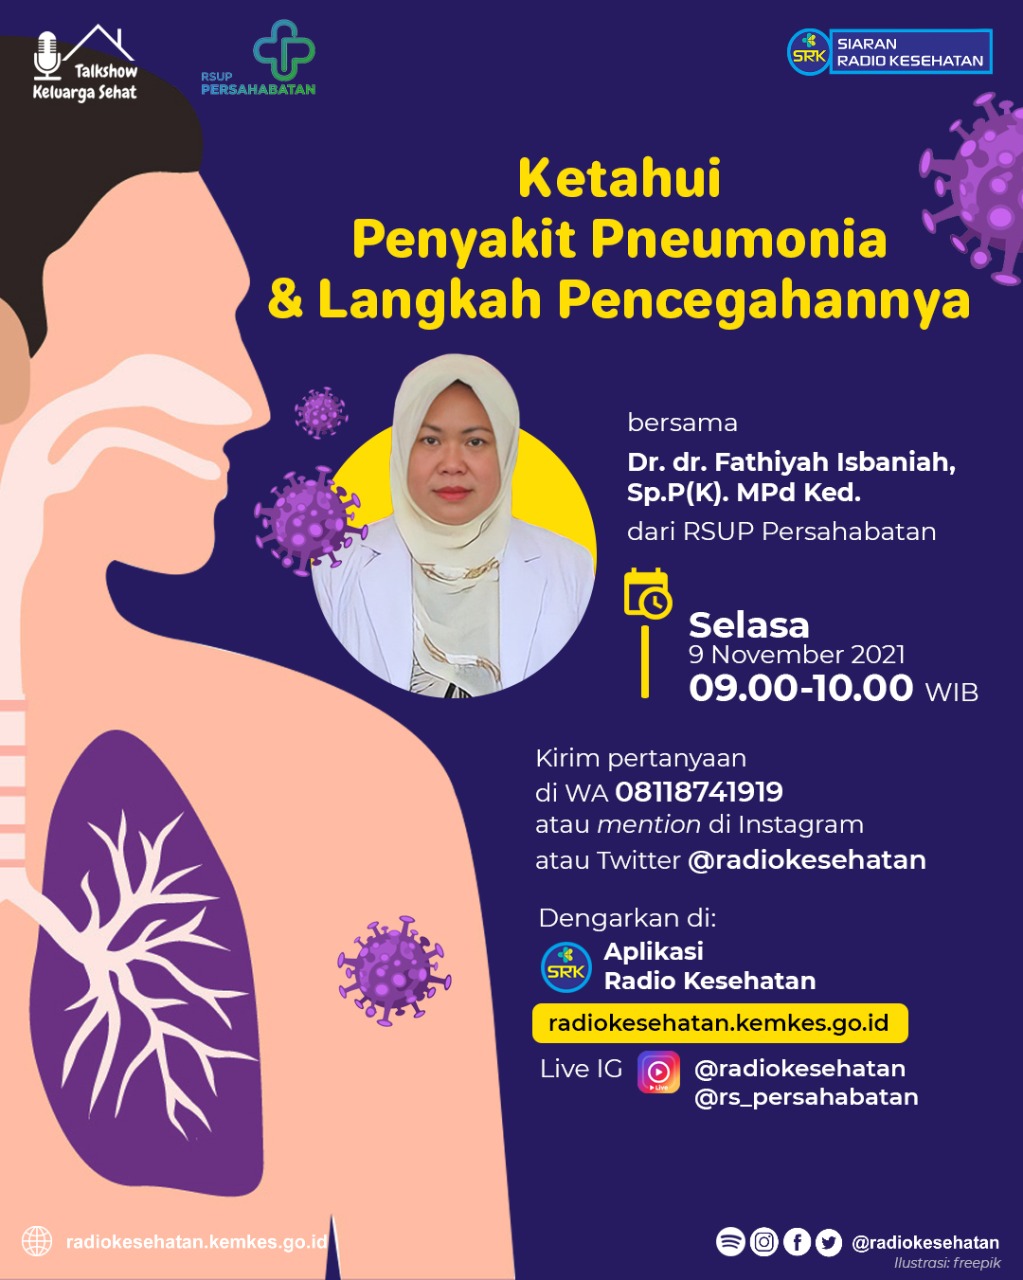 Ketahui Penyakit Pneumonia & Langkah Pencegahannya